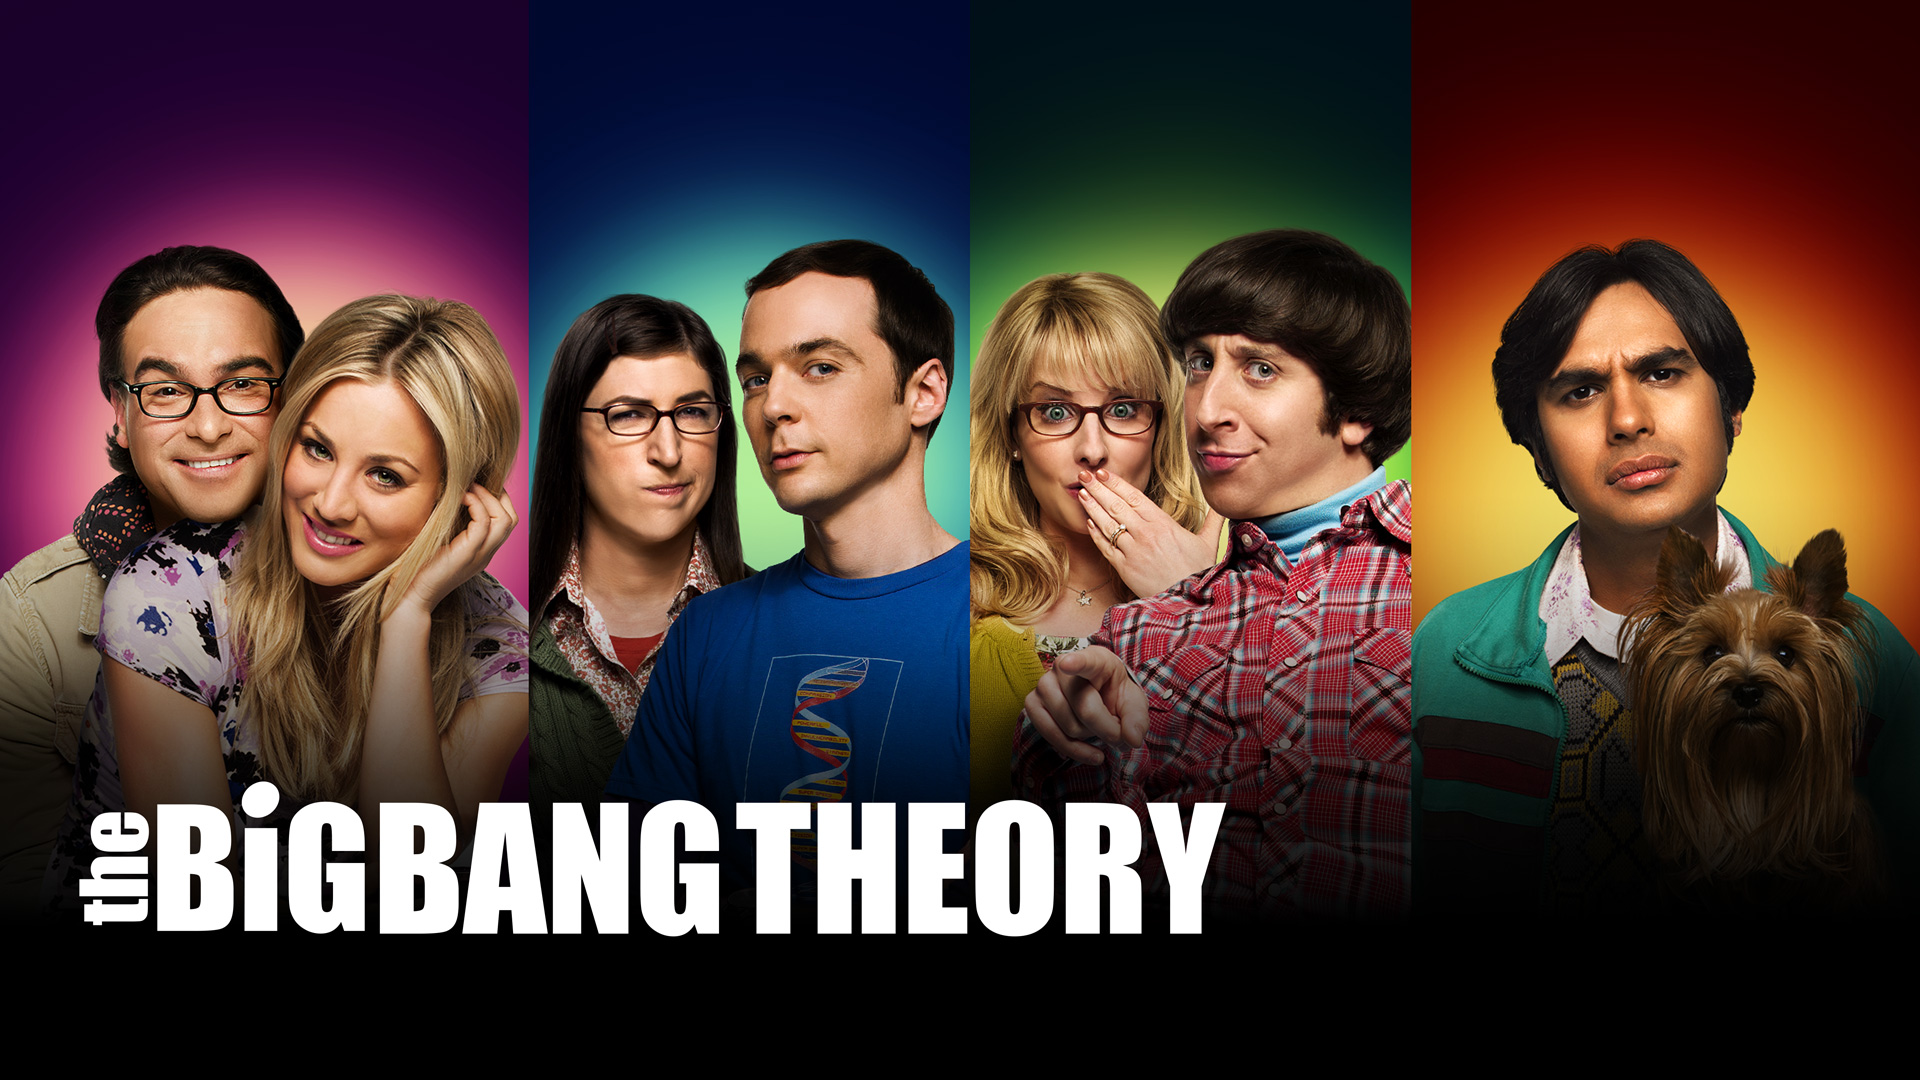 lo sfondo della teoria del big bang,persone,gruppo sociale,gioventù,divertimento,film